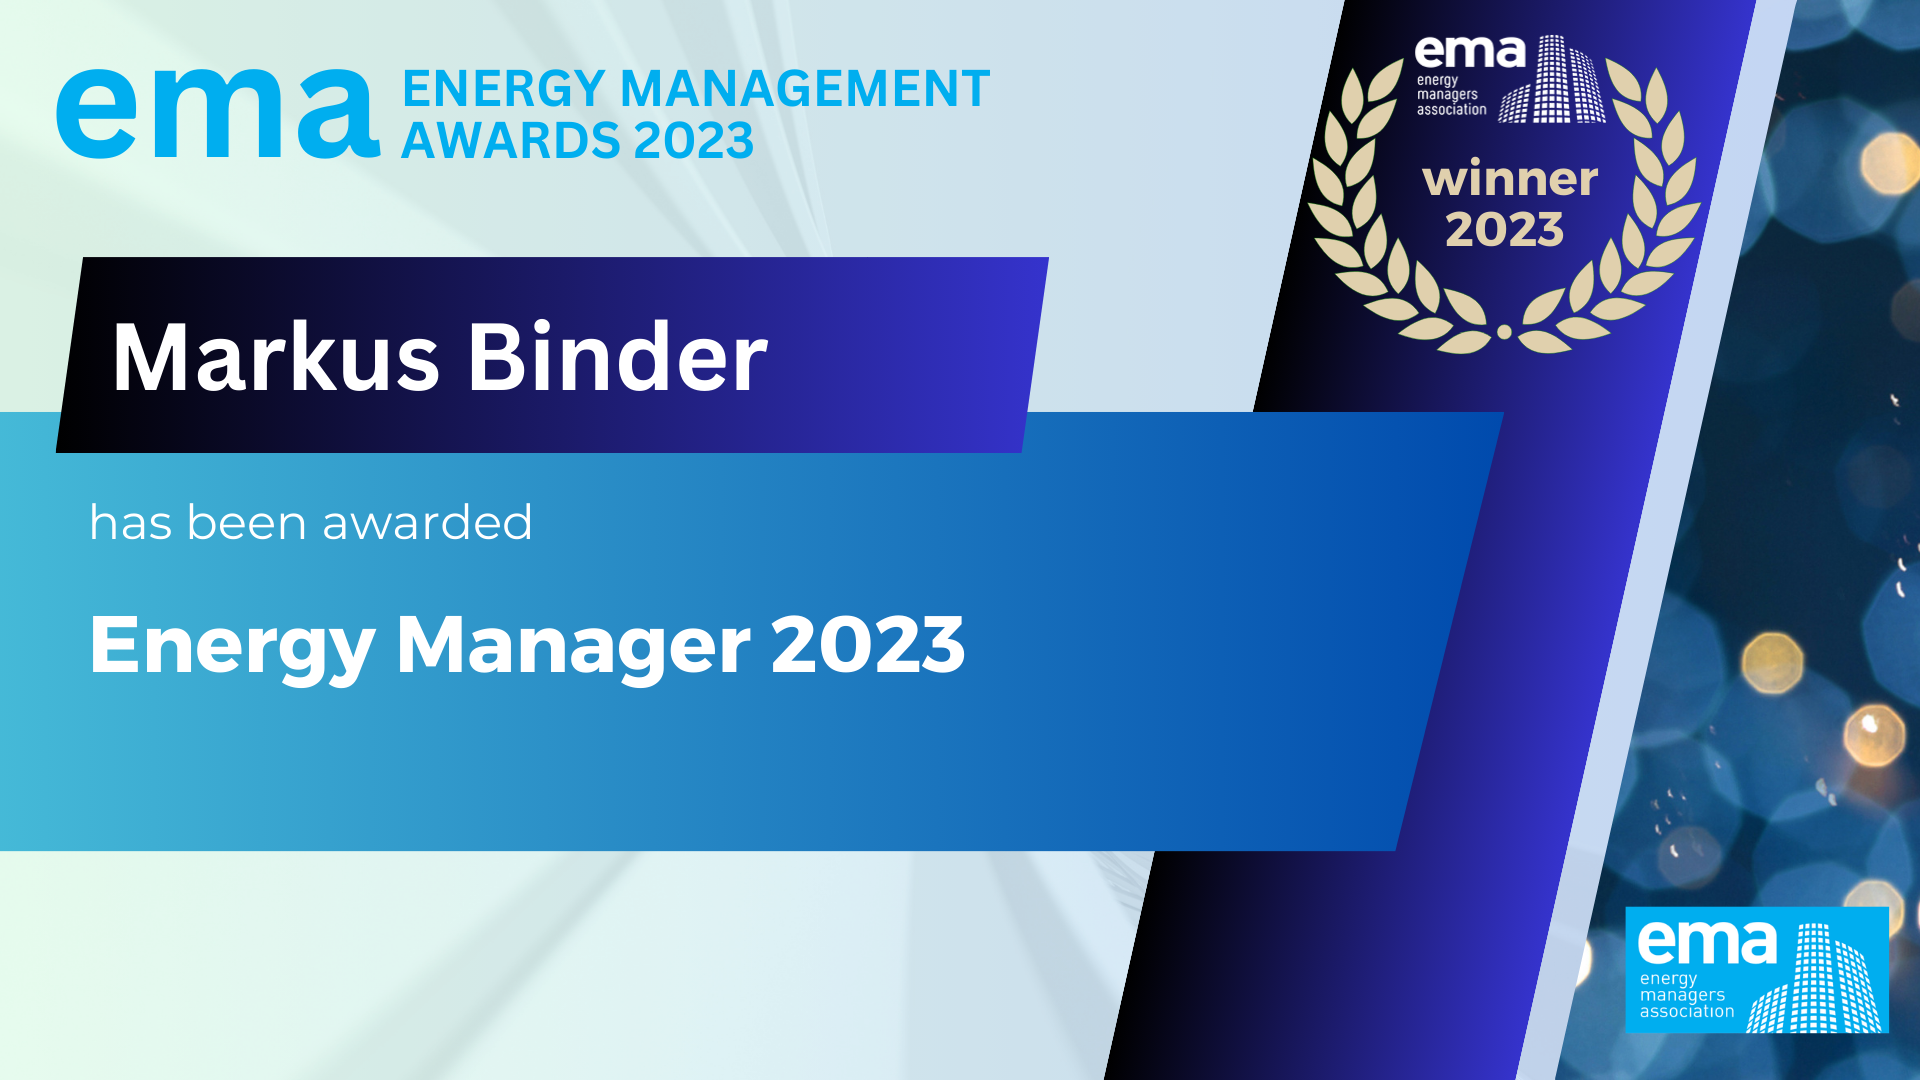 Energy Manager 2023 Winner